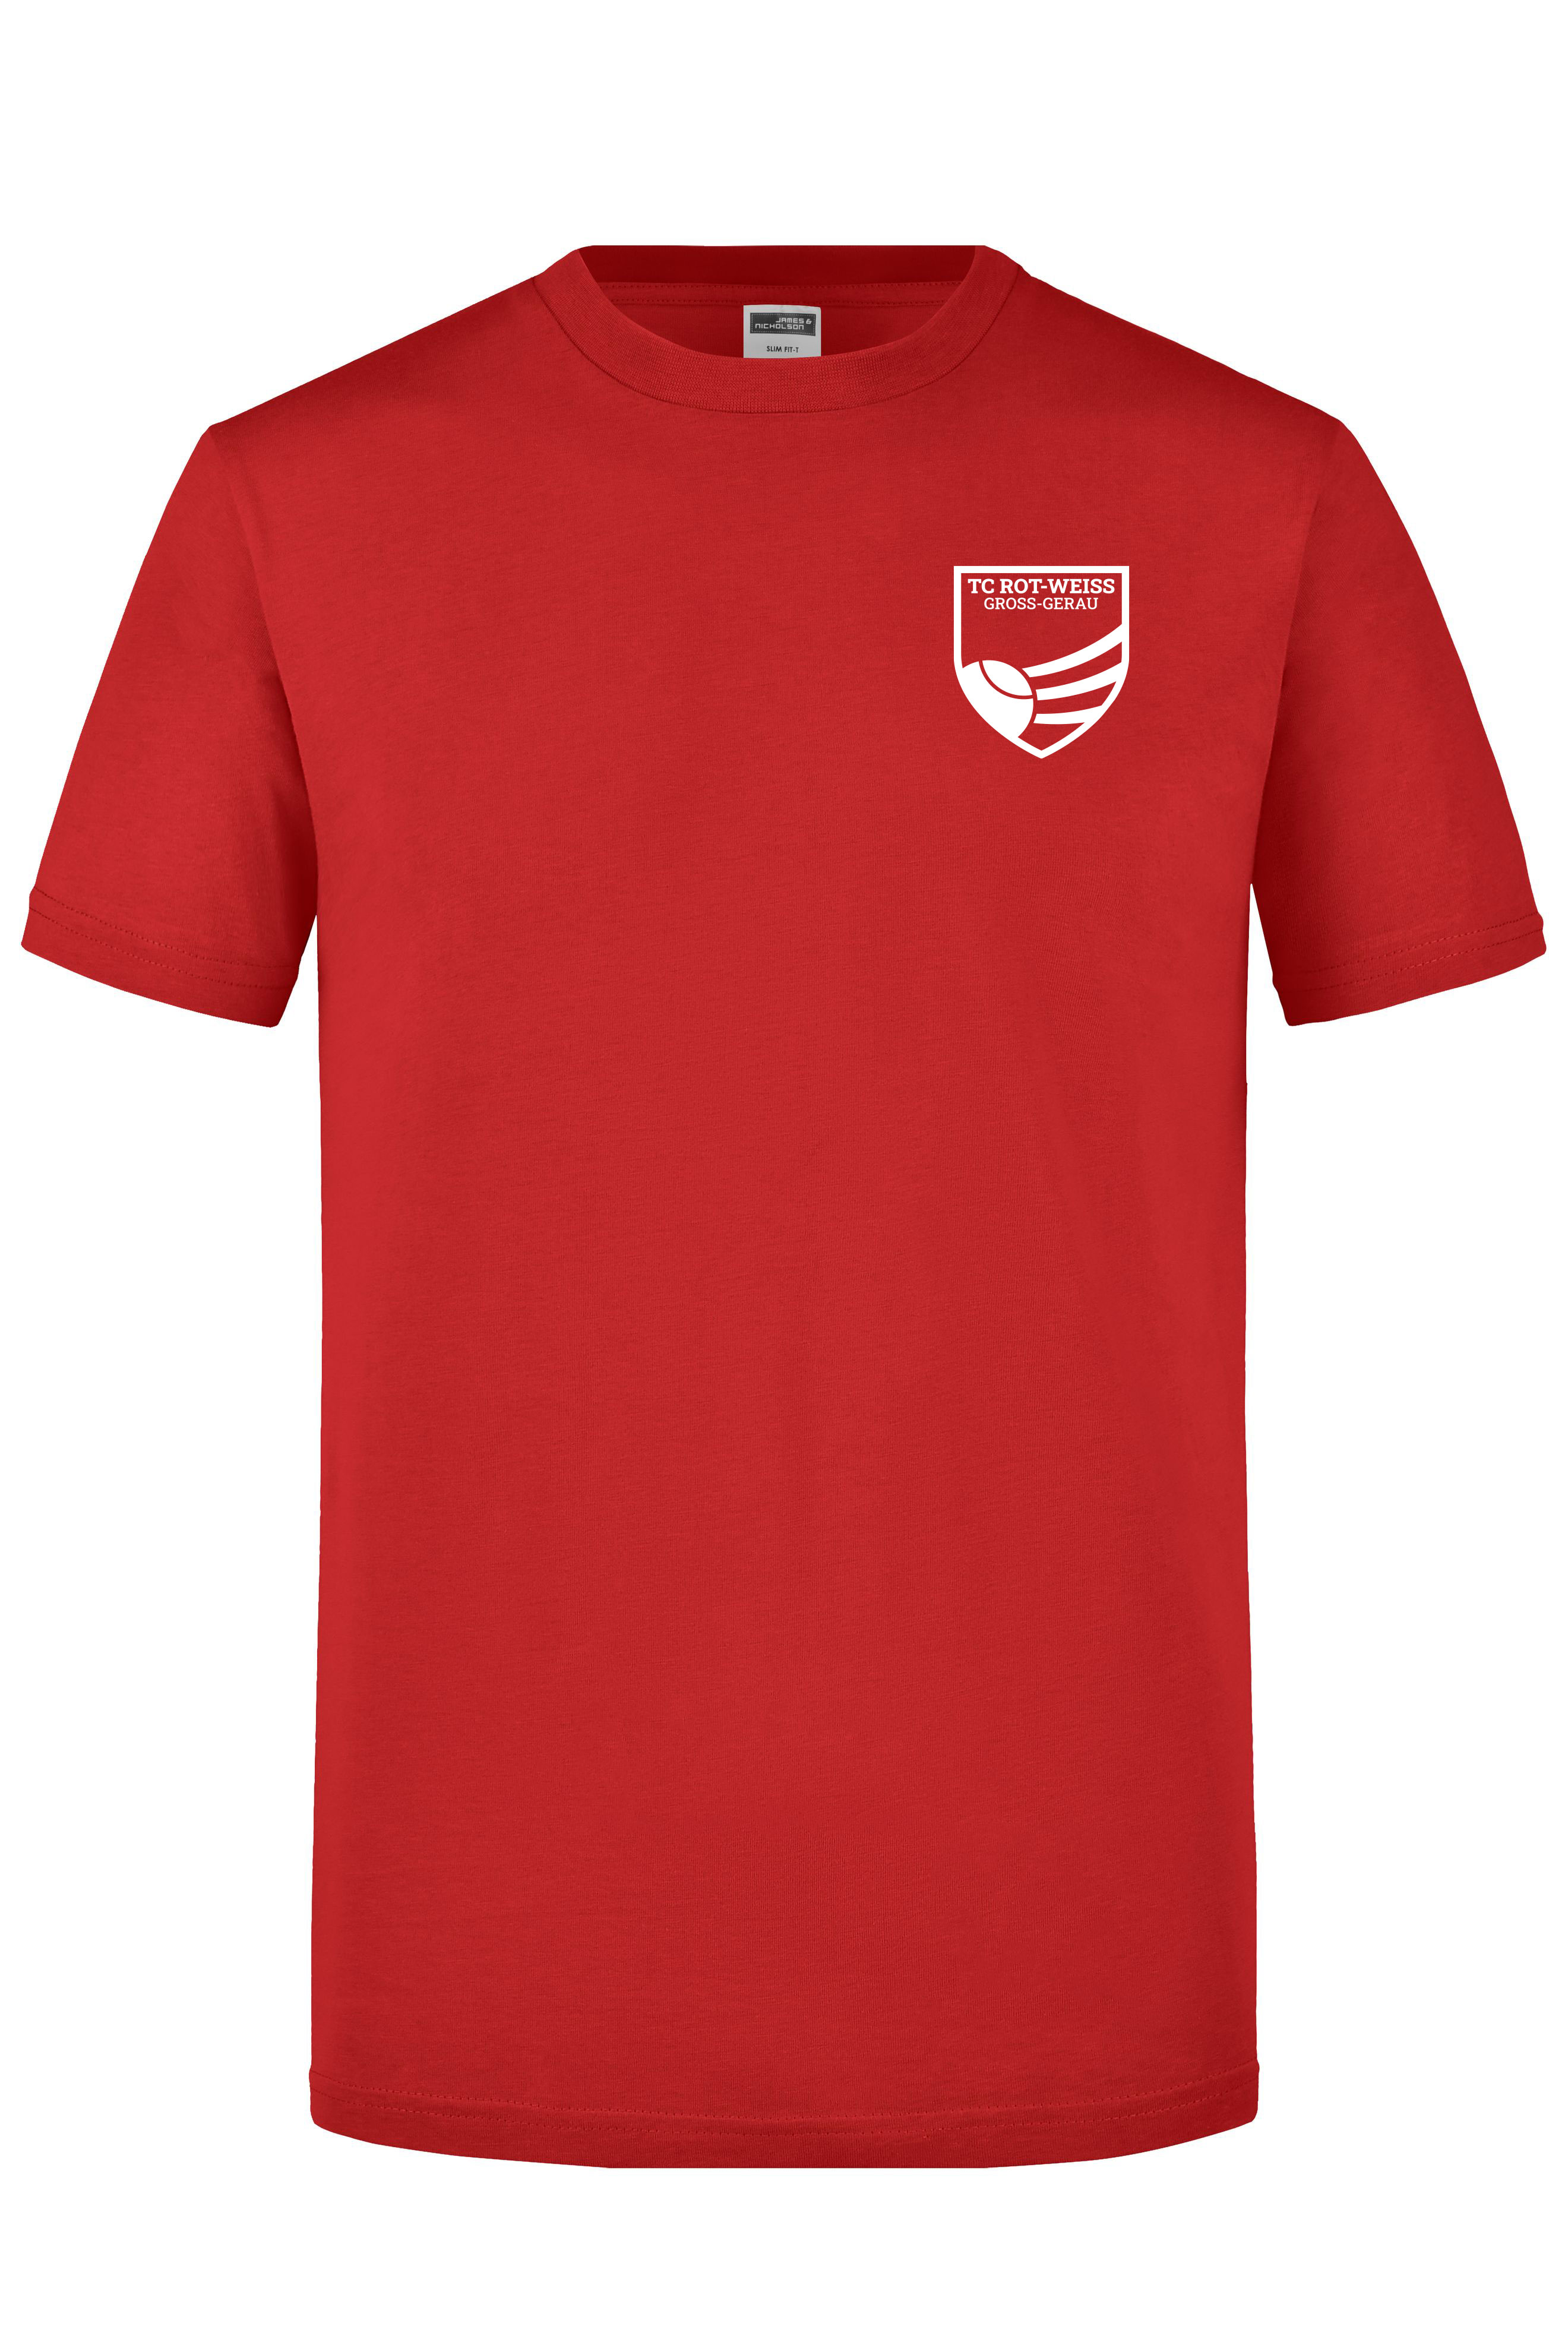 TC Rot-Weiss - Vorteil Dein Name - T-Shirt weiss auf rot